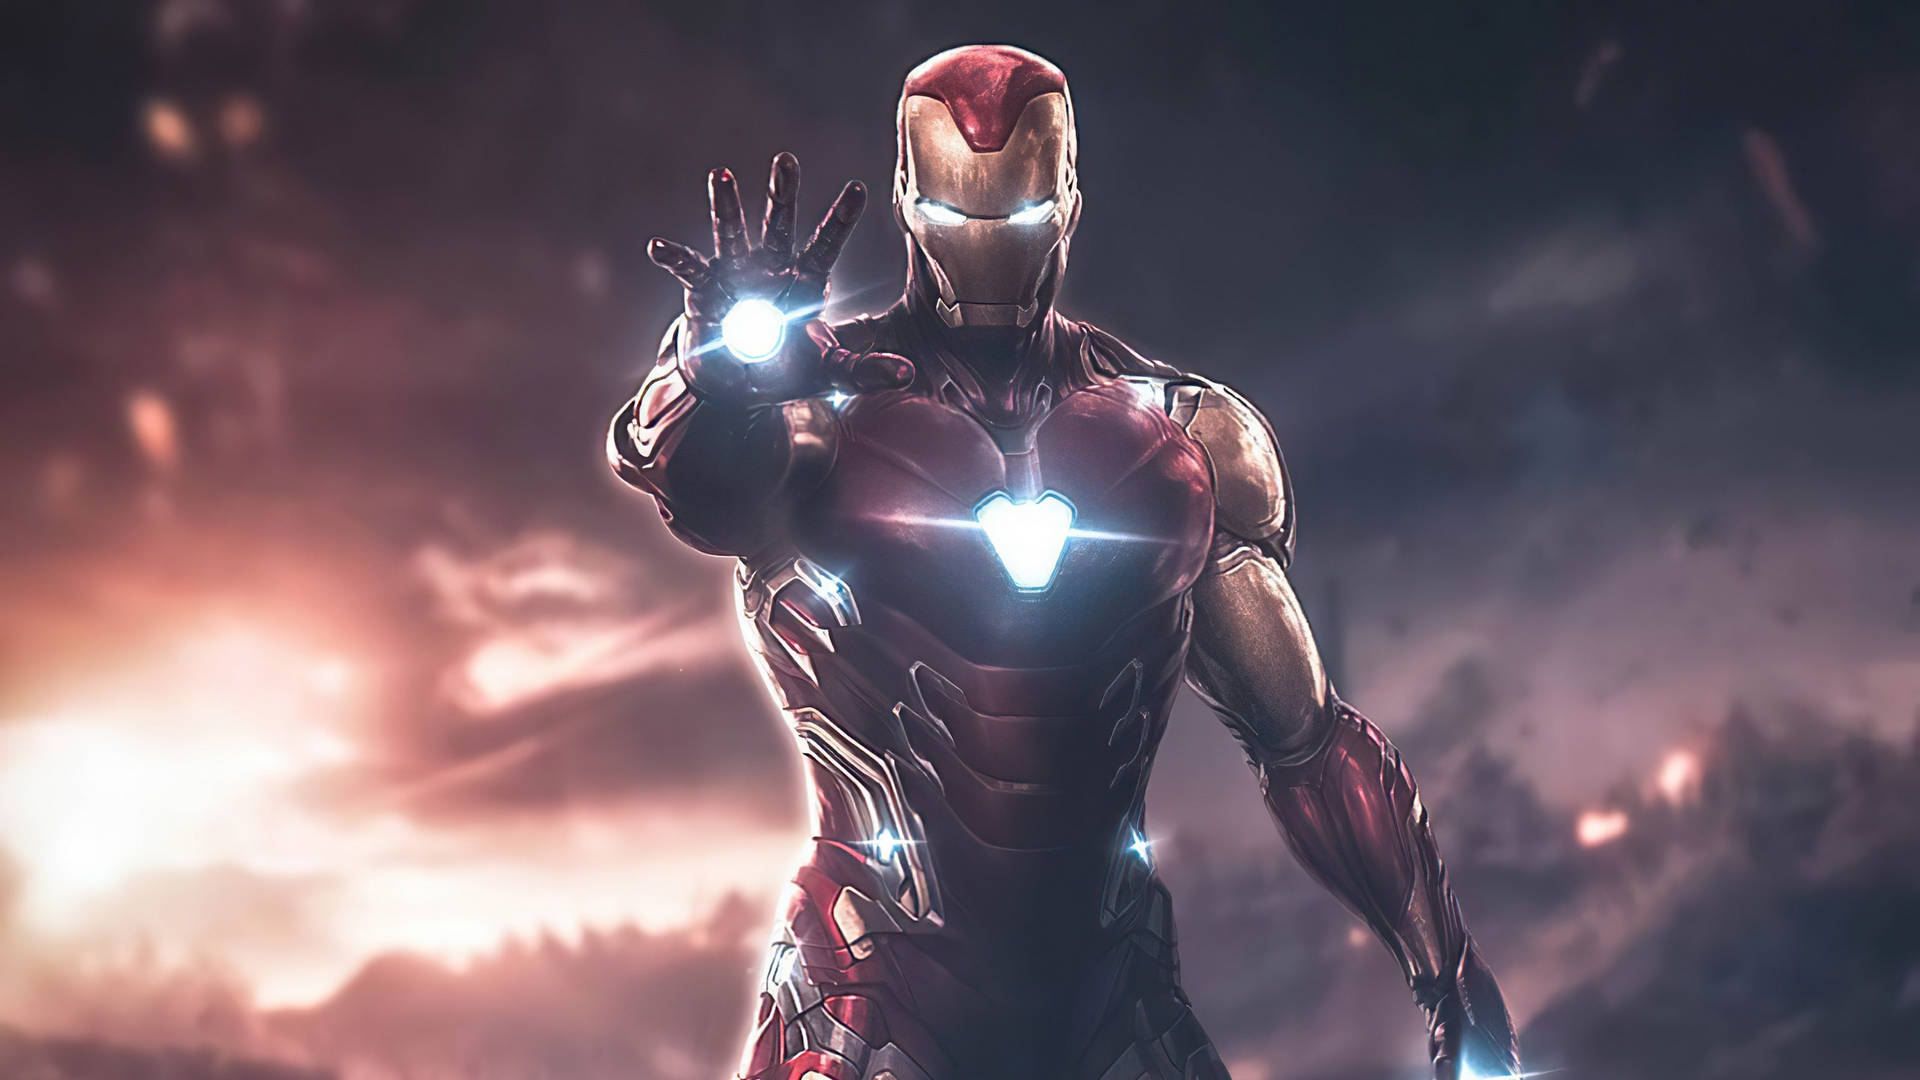 Cinematografischesfoto Des Superhelden Iron Man. Wallpaper